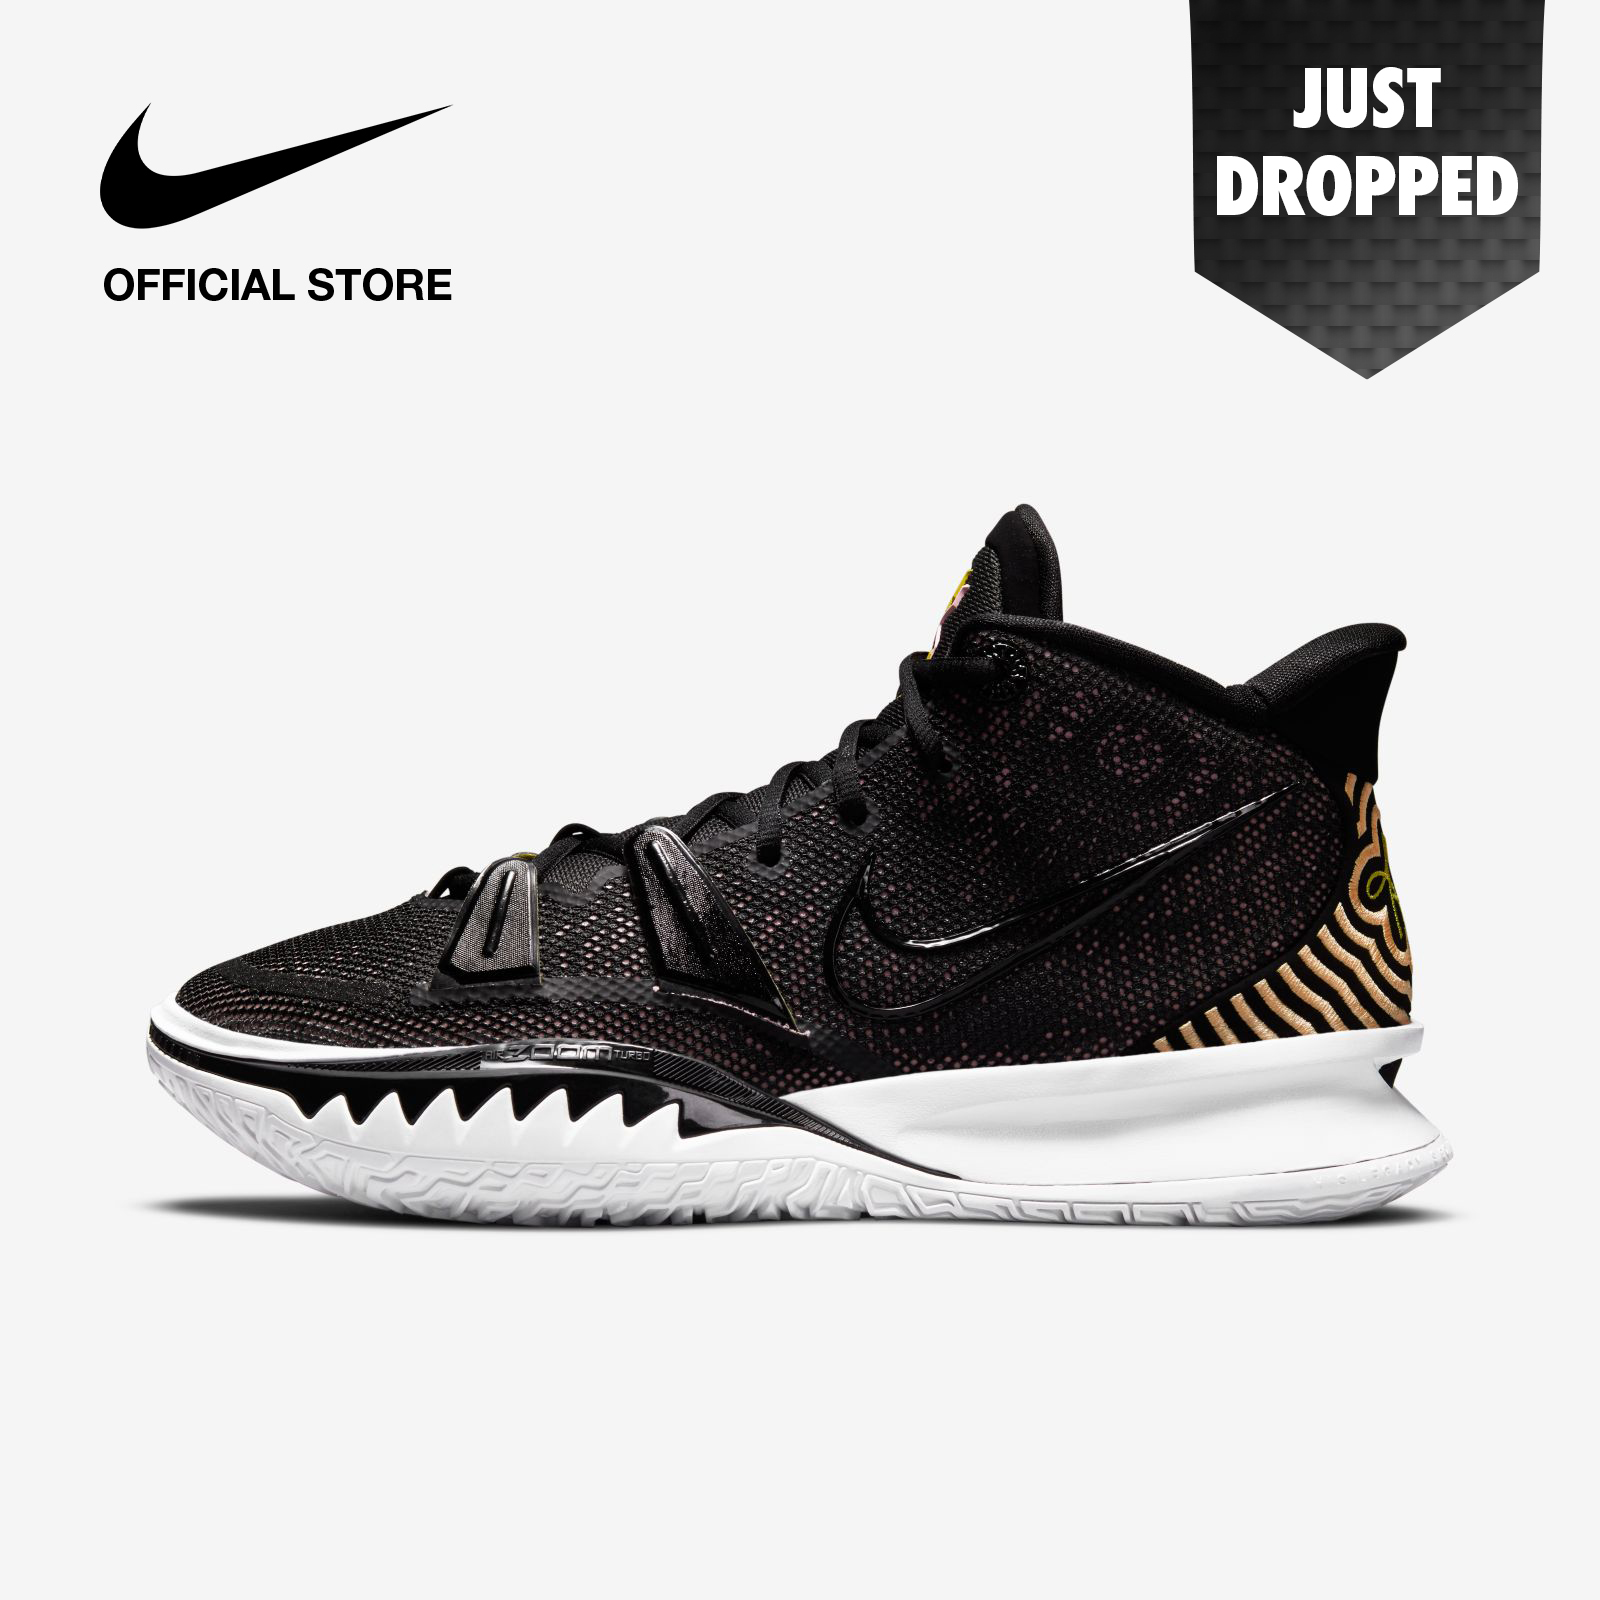 Nike Men's Kyrie 7 EP Basketball Shoes - Black ไนกี้ รองเท้าบาสเก็ตบอลผู้ชาย ไครี่ 7 อีพี - สีดำ